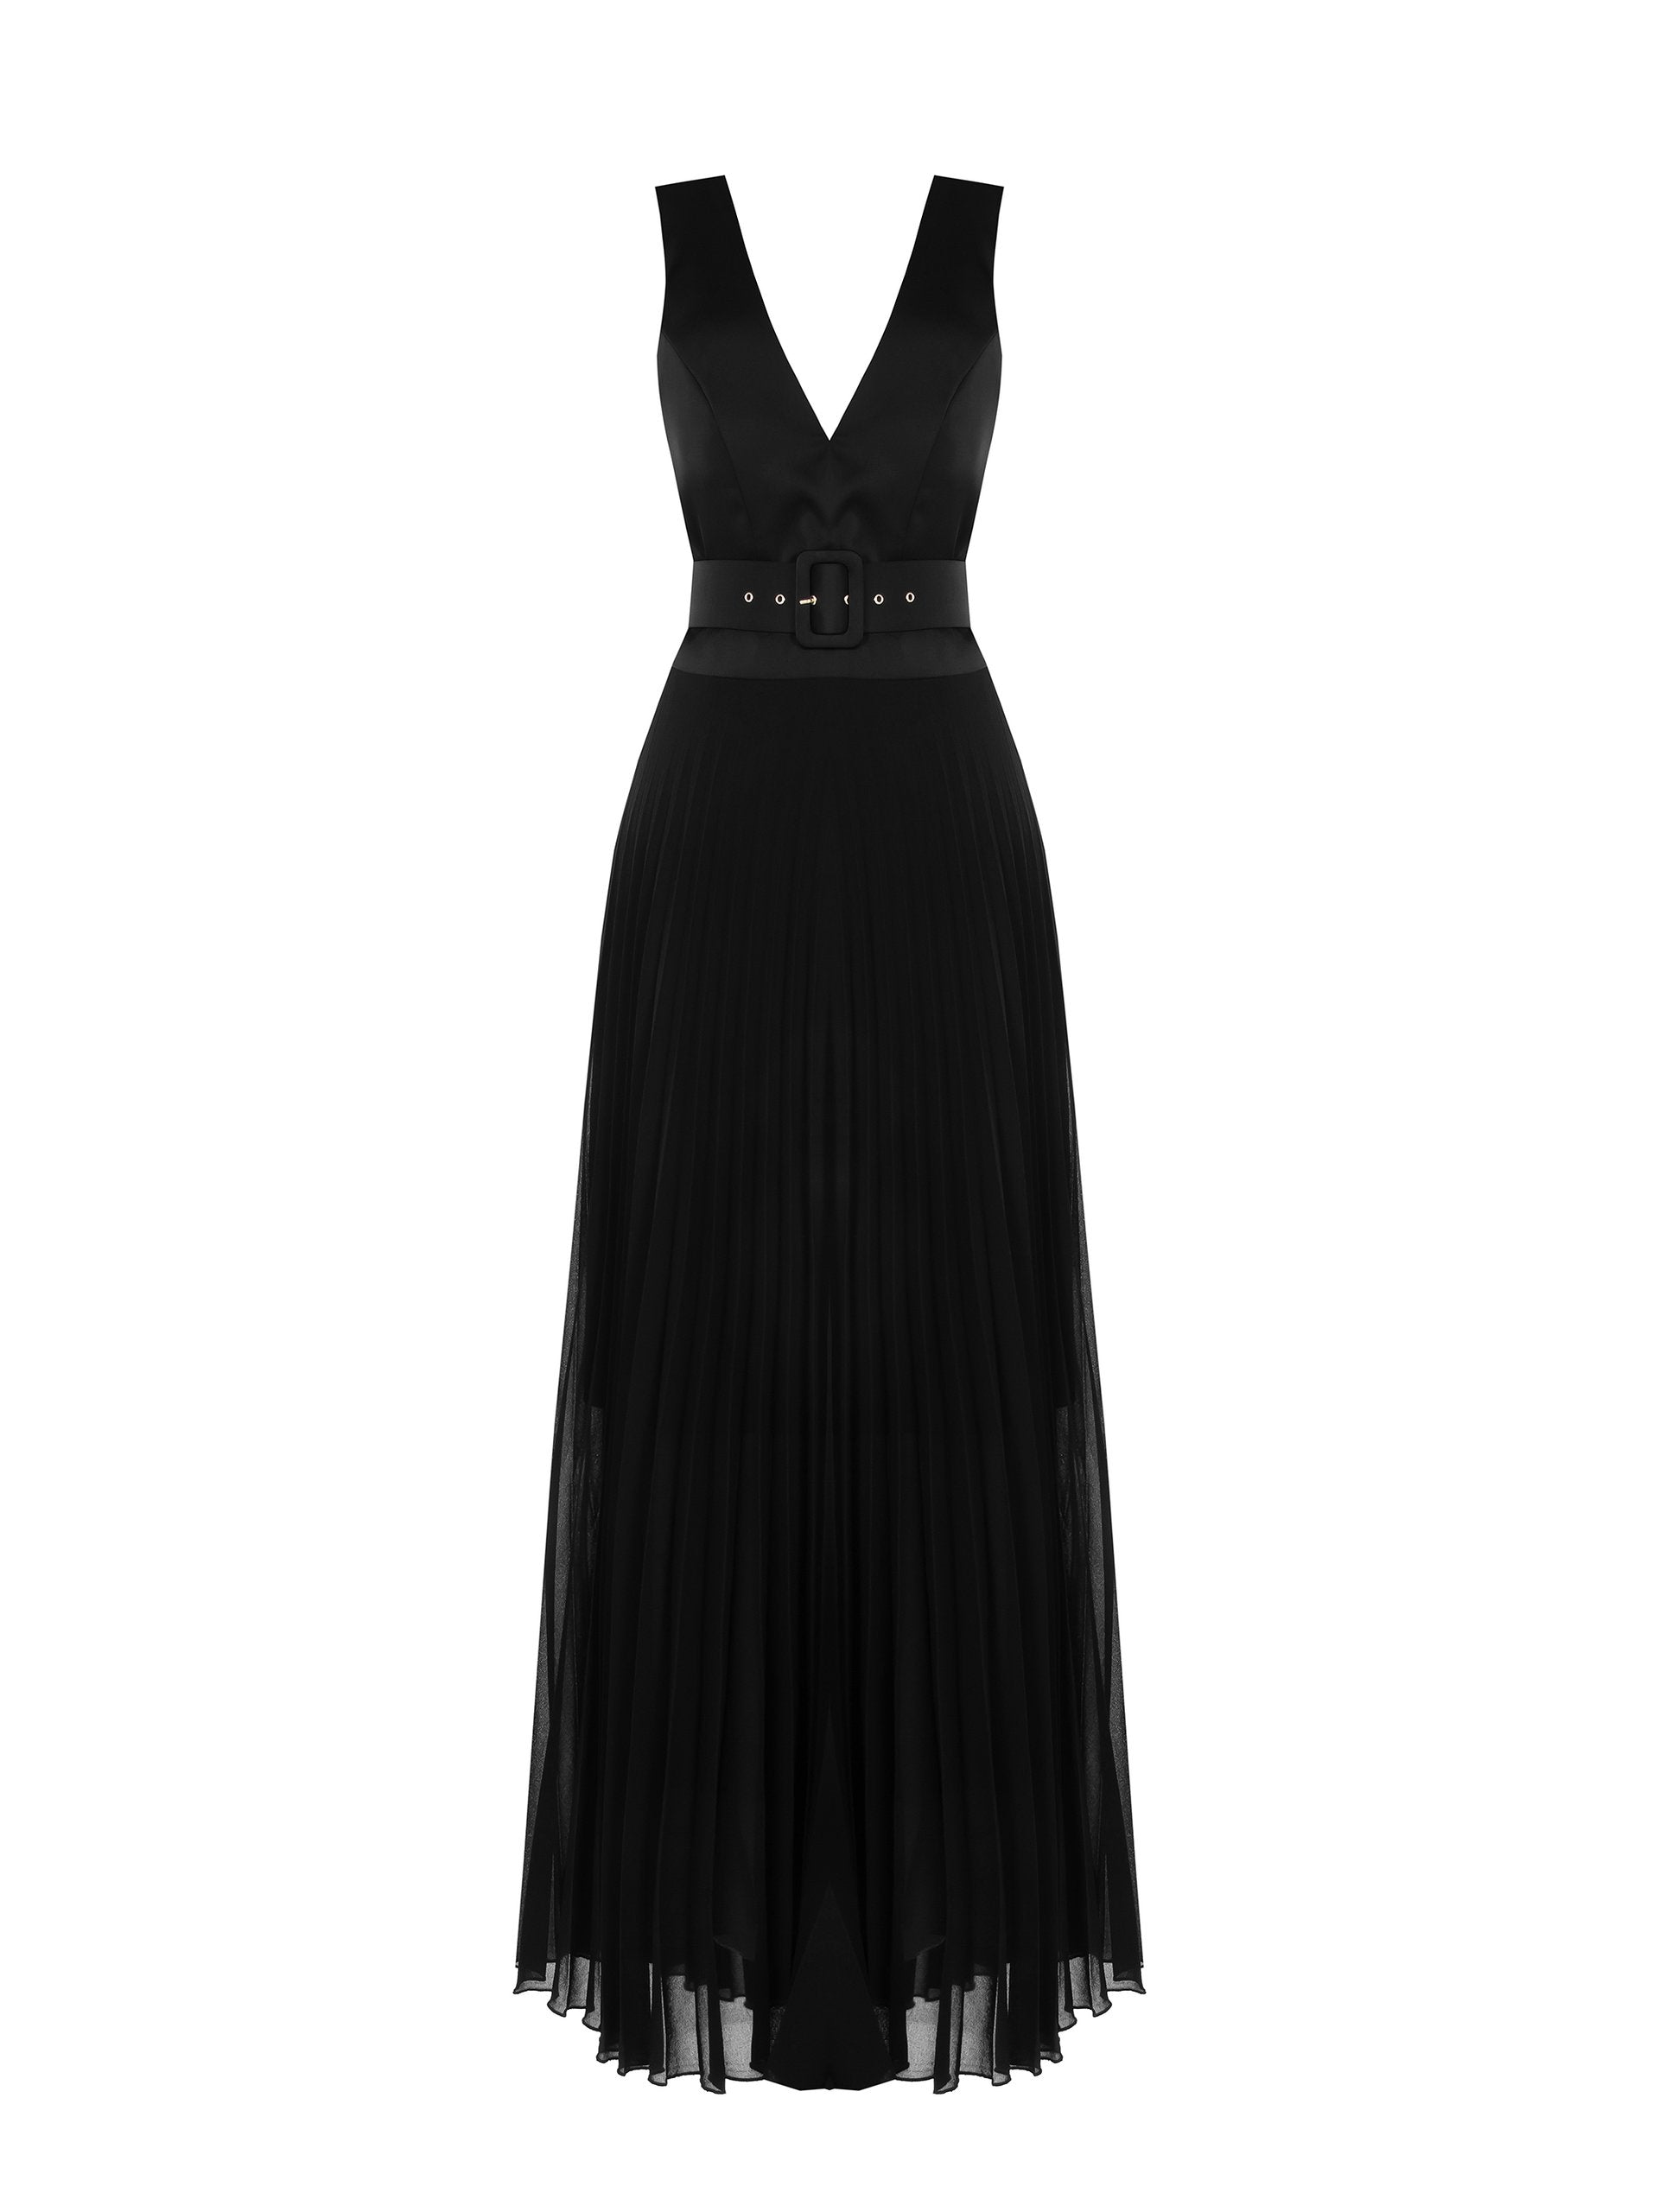 IVY V-neck Belted Black Gown